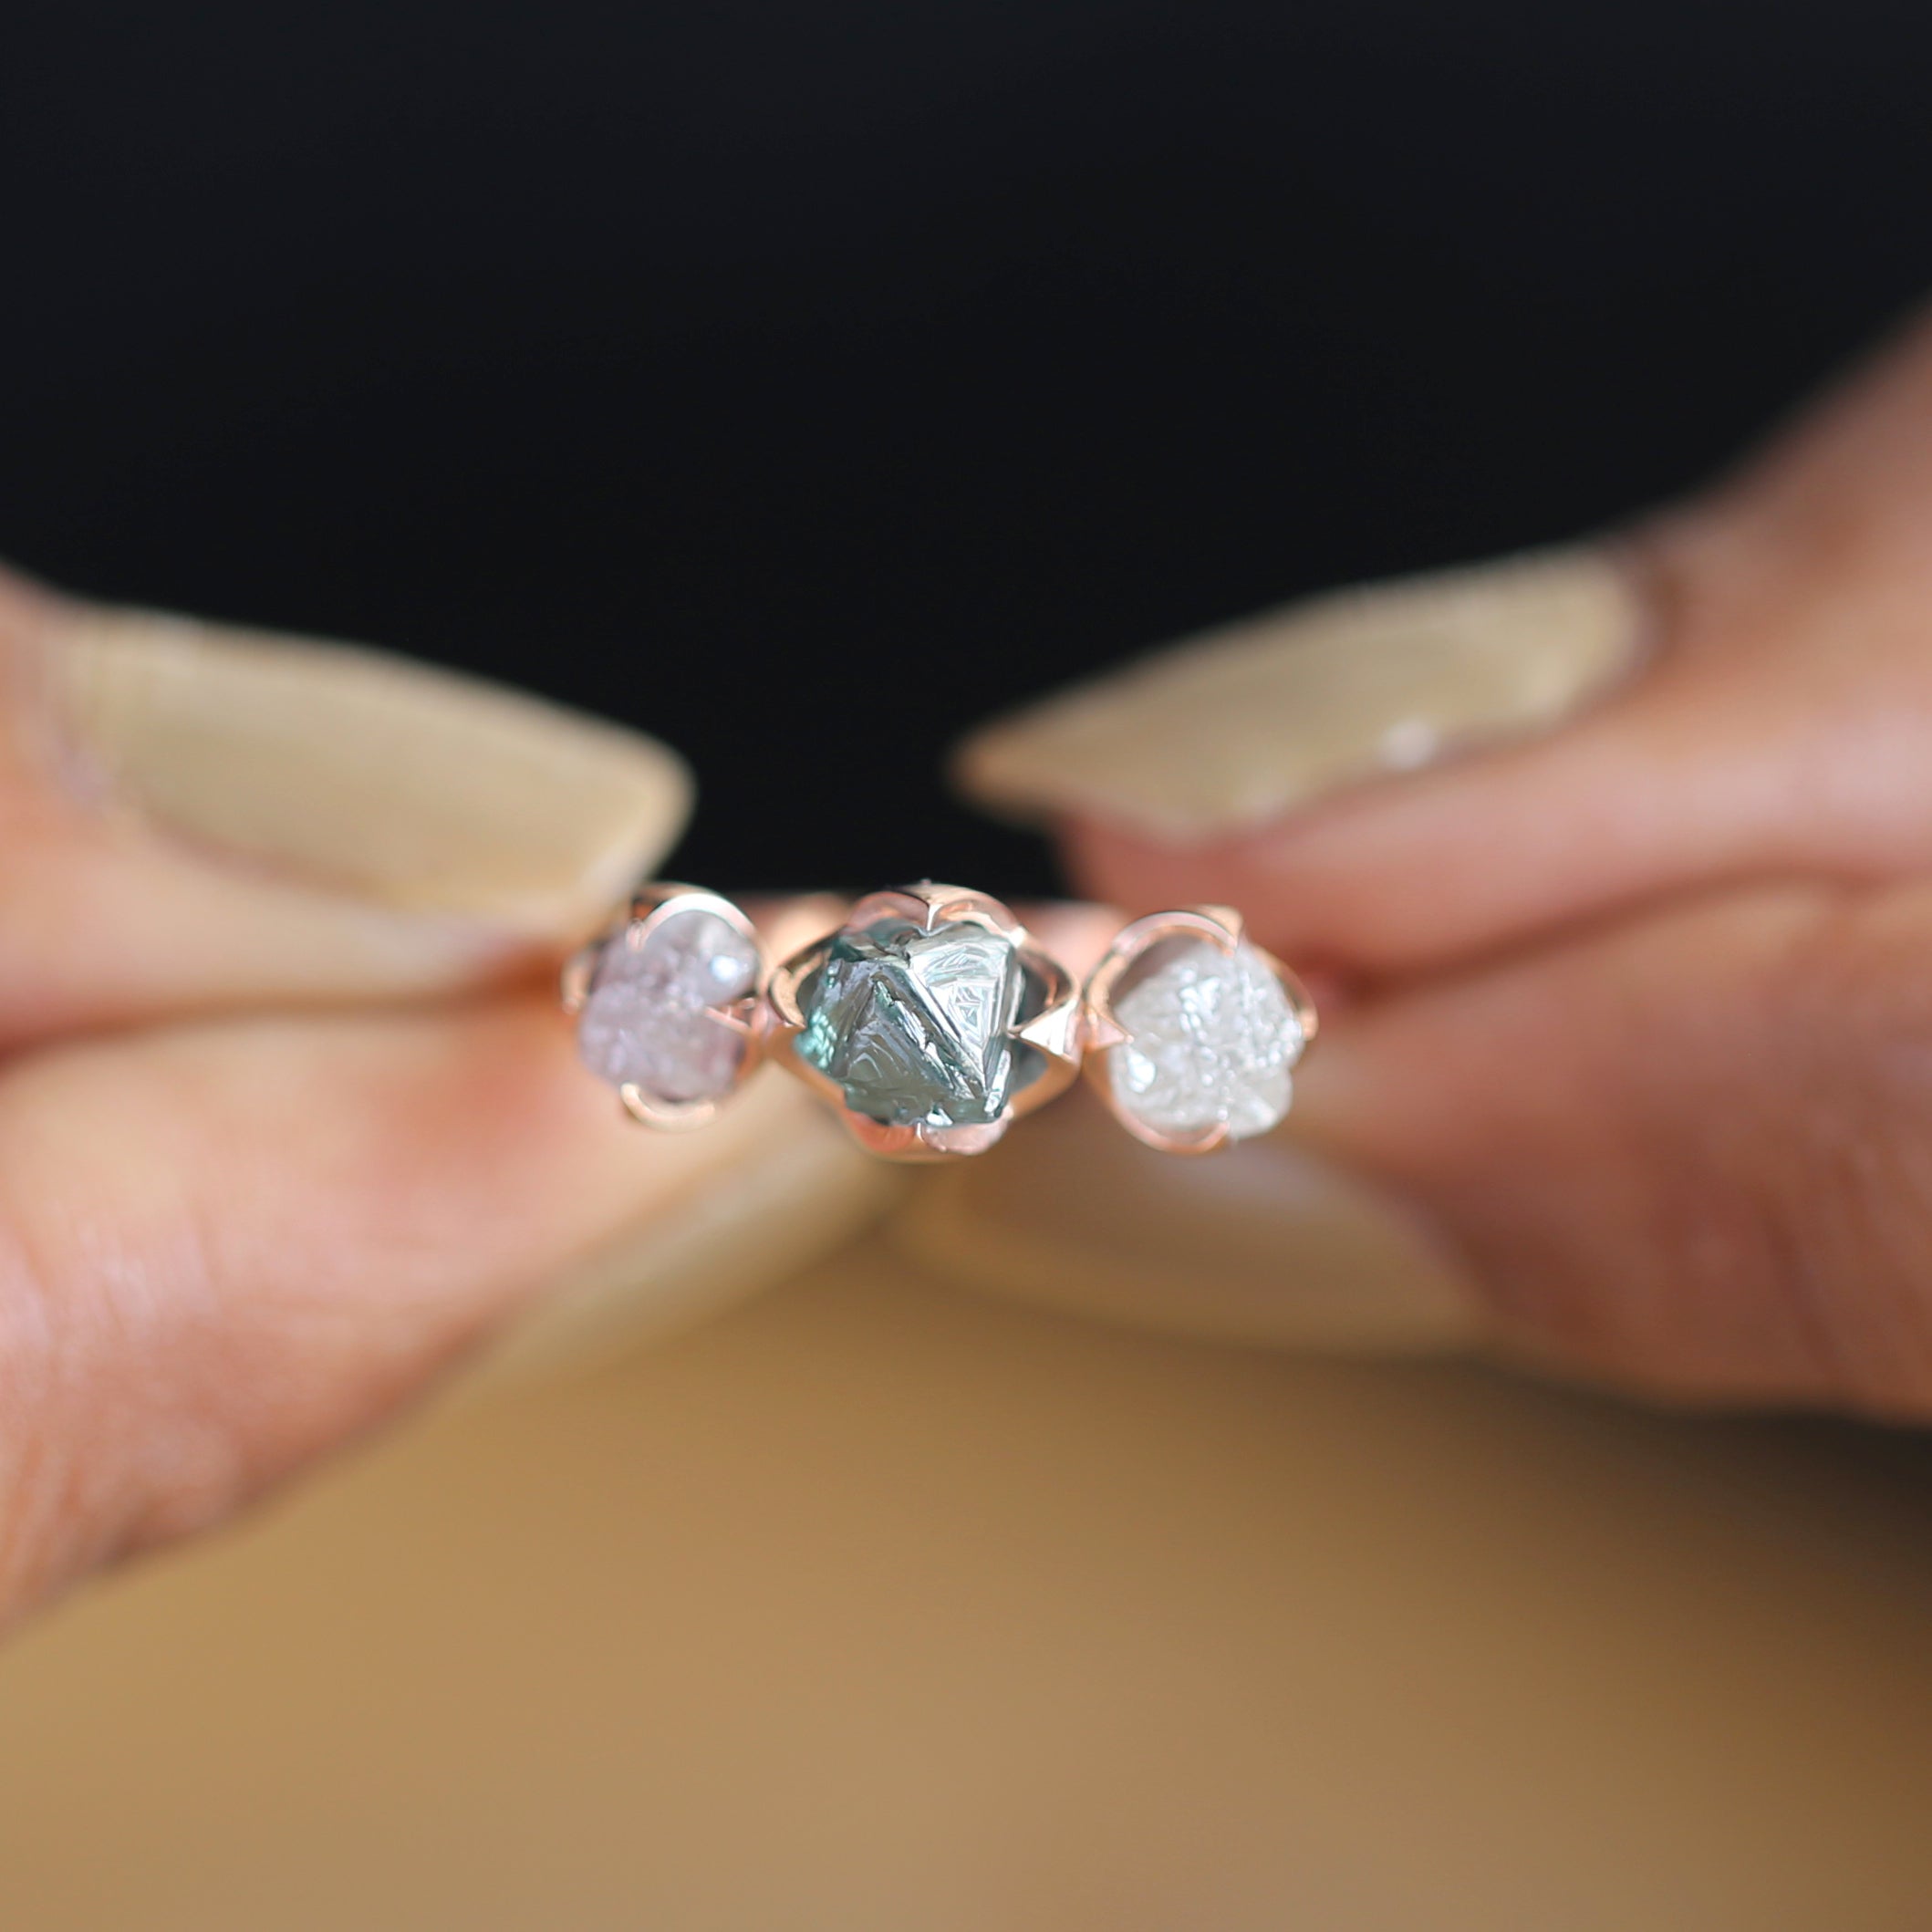 1.19 CT Blue Diamond Ring, Rough Cut Diamond Ring, Engagement Ring, Irregular Diamond Ring, 14K Rose Gold Ring, Uncut Diamond Ring KDL9772